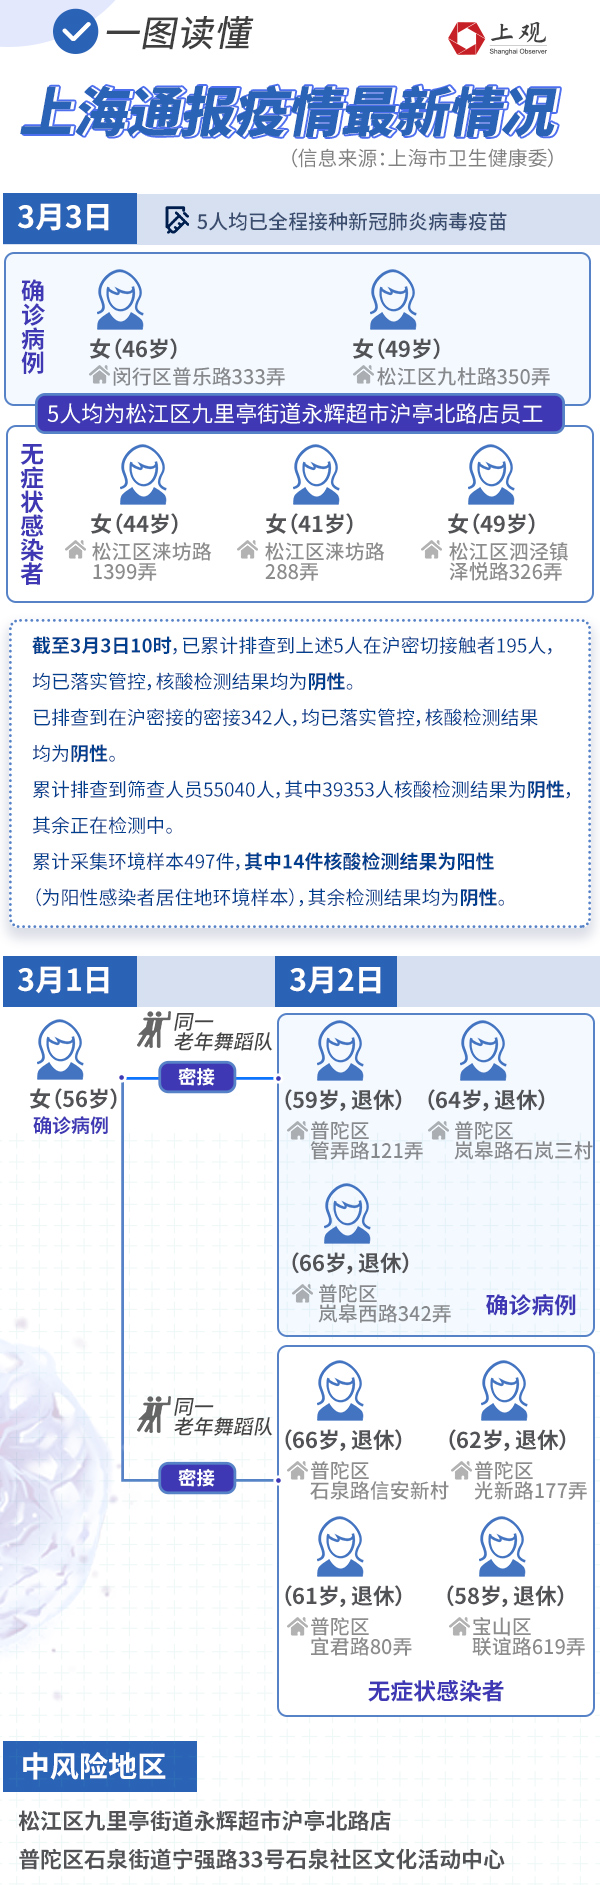 新增2例本土病例、一地列为中风险地区，一图读懂上海疫情最新情况athena知慧学术英语创始人